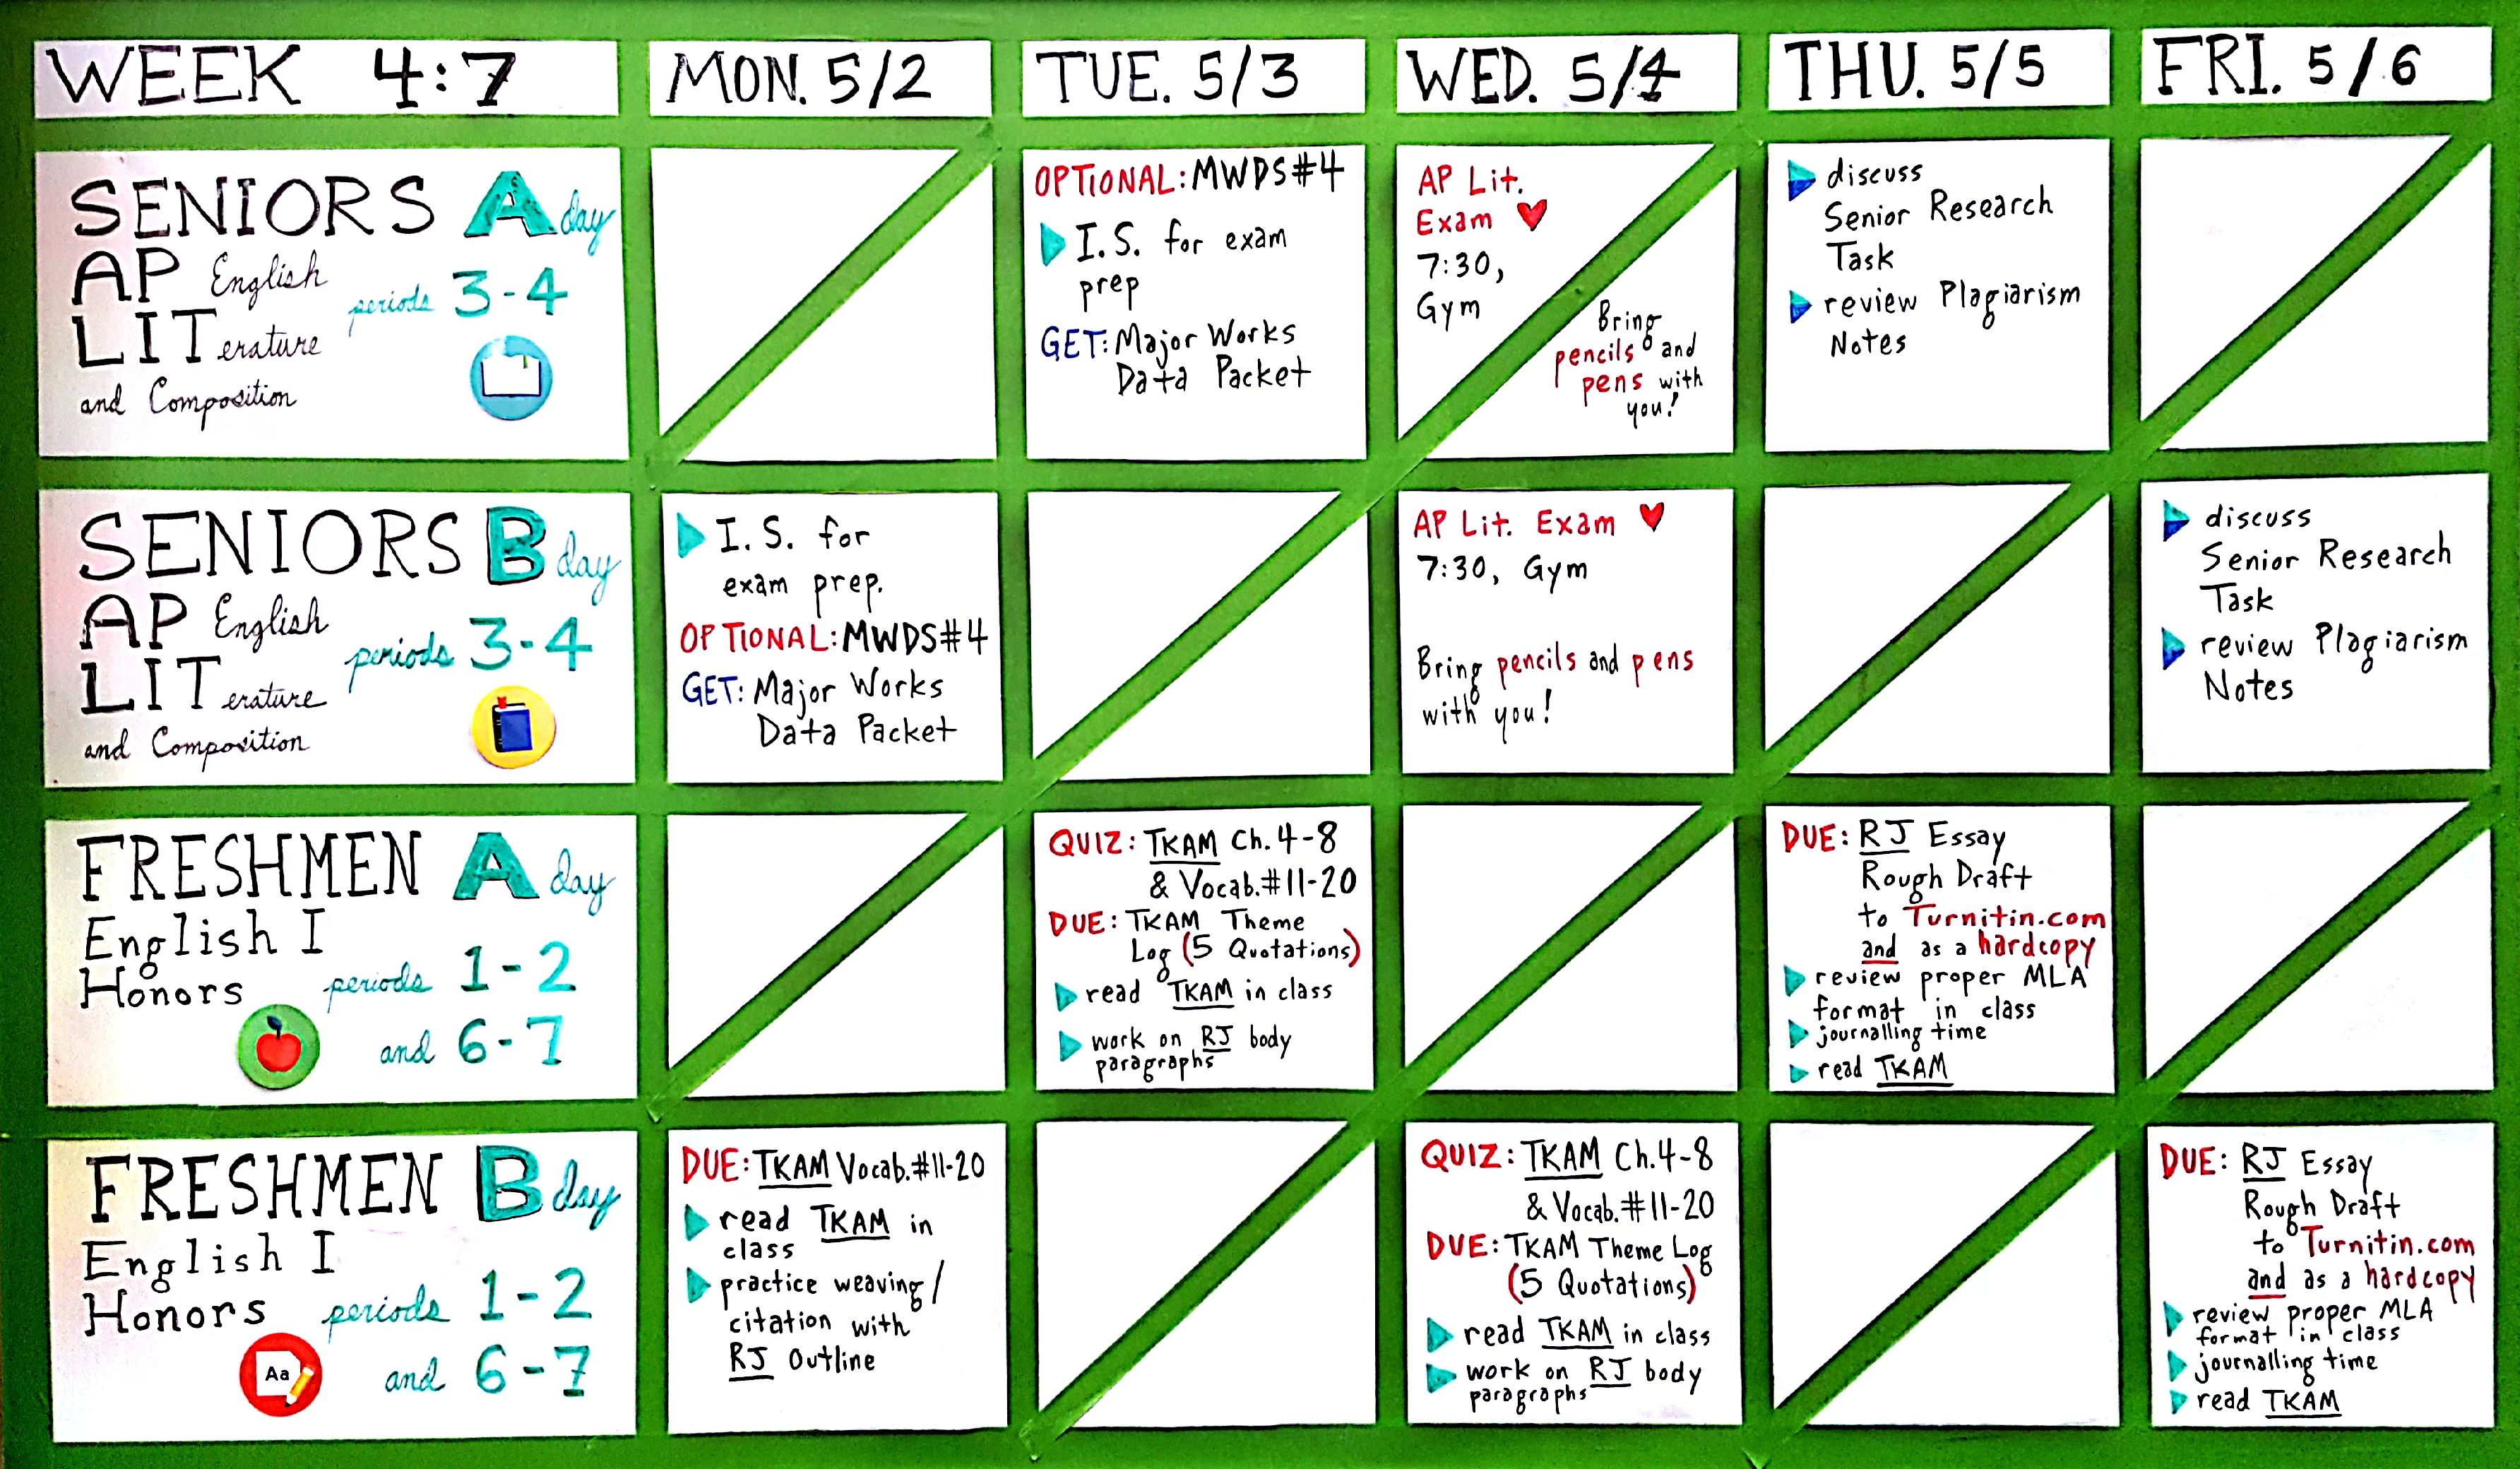 Week 4:7 (May 2-6)